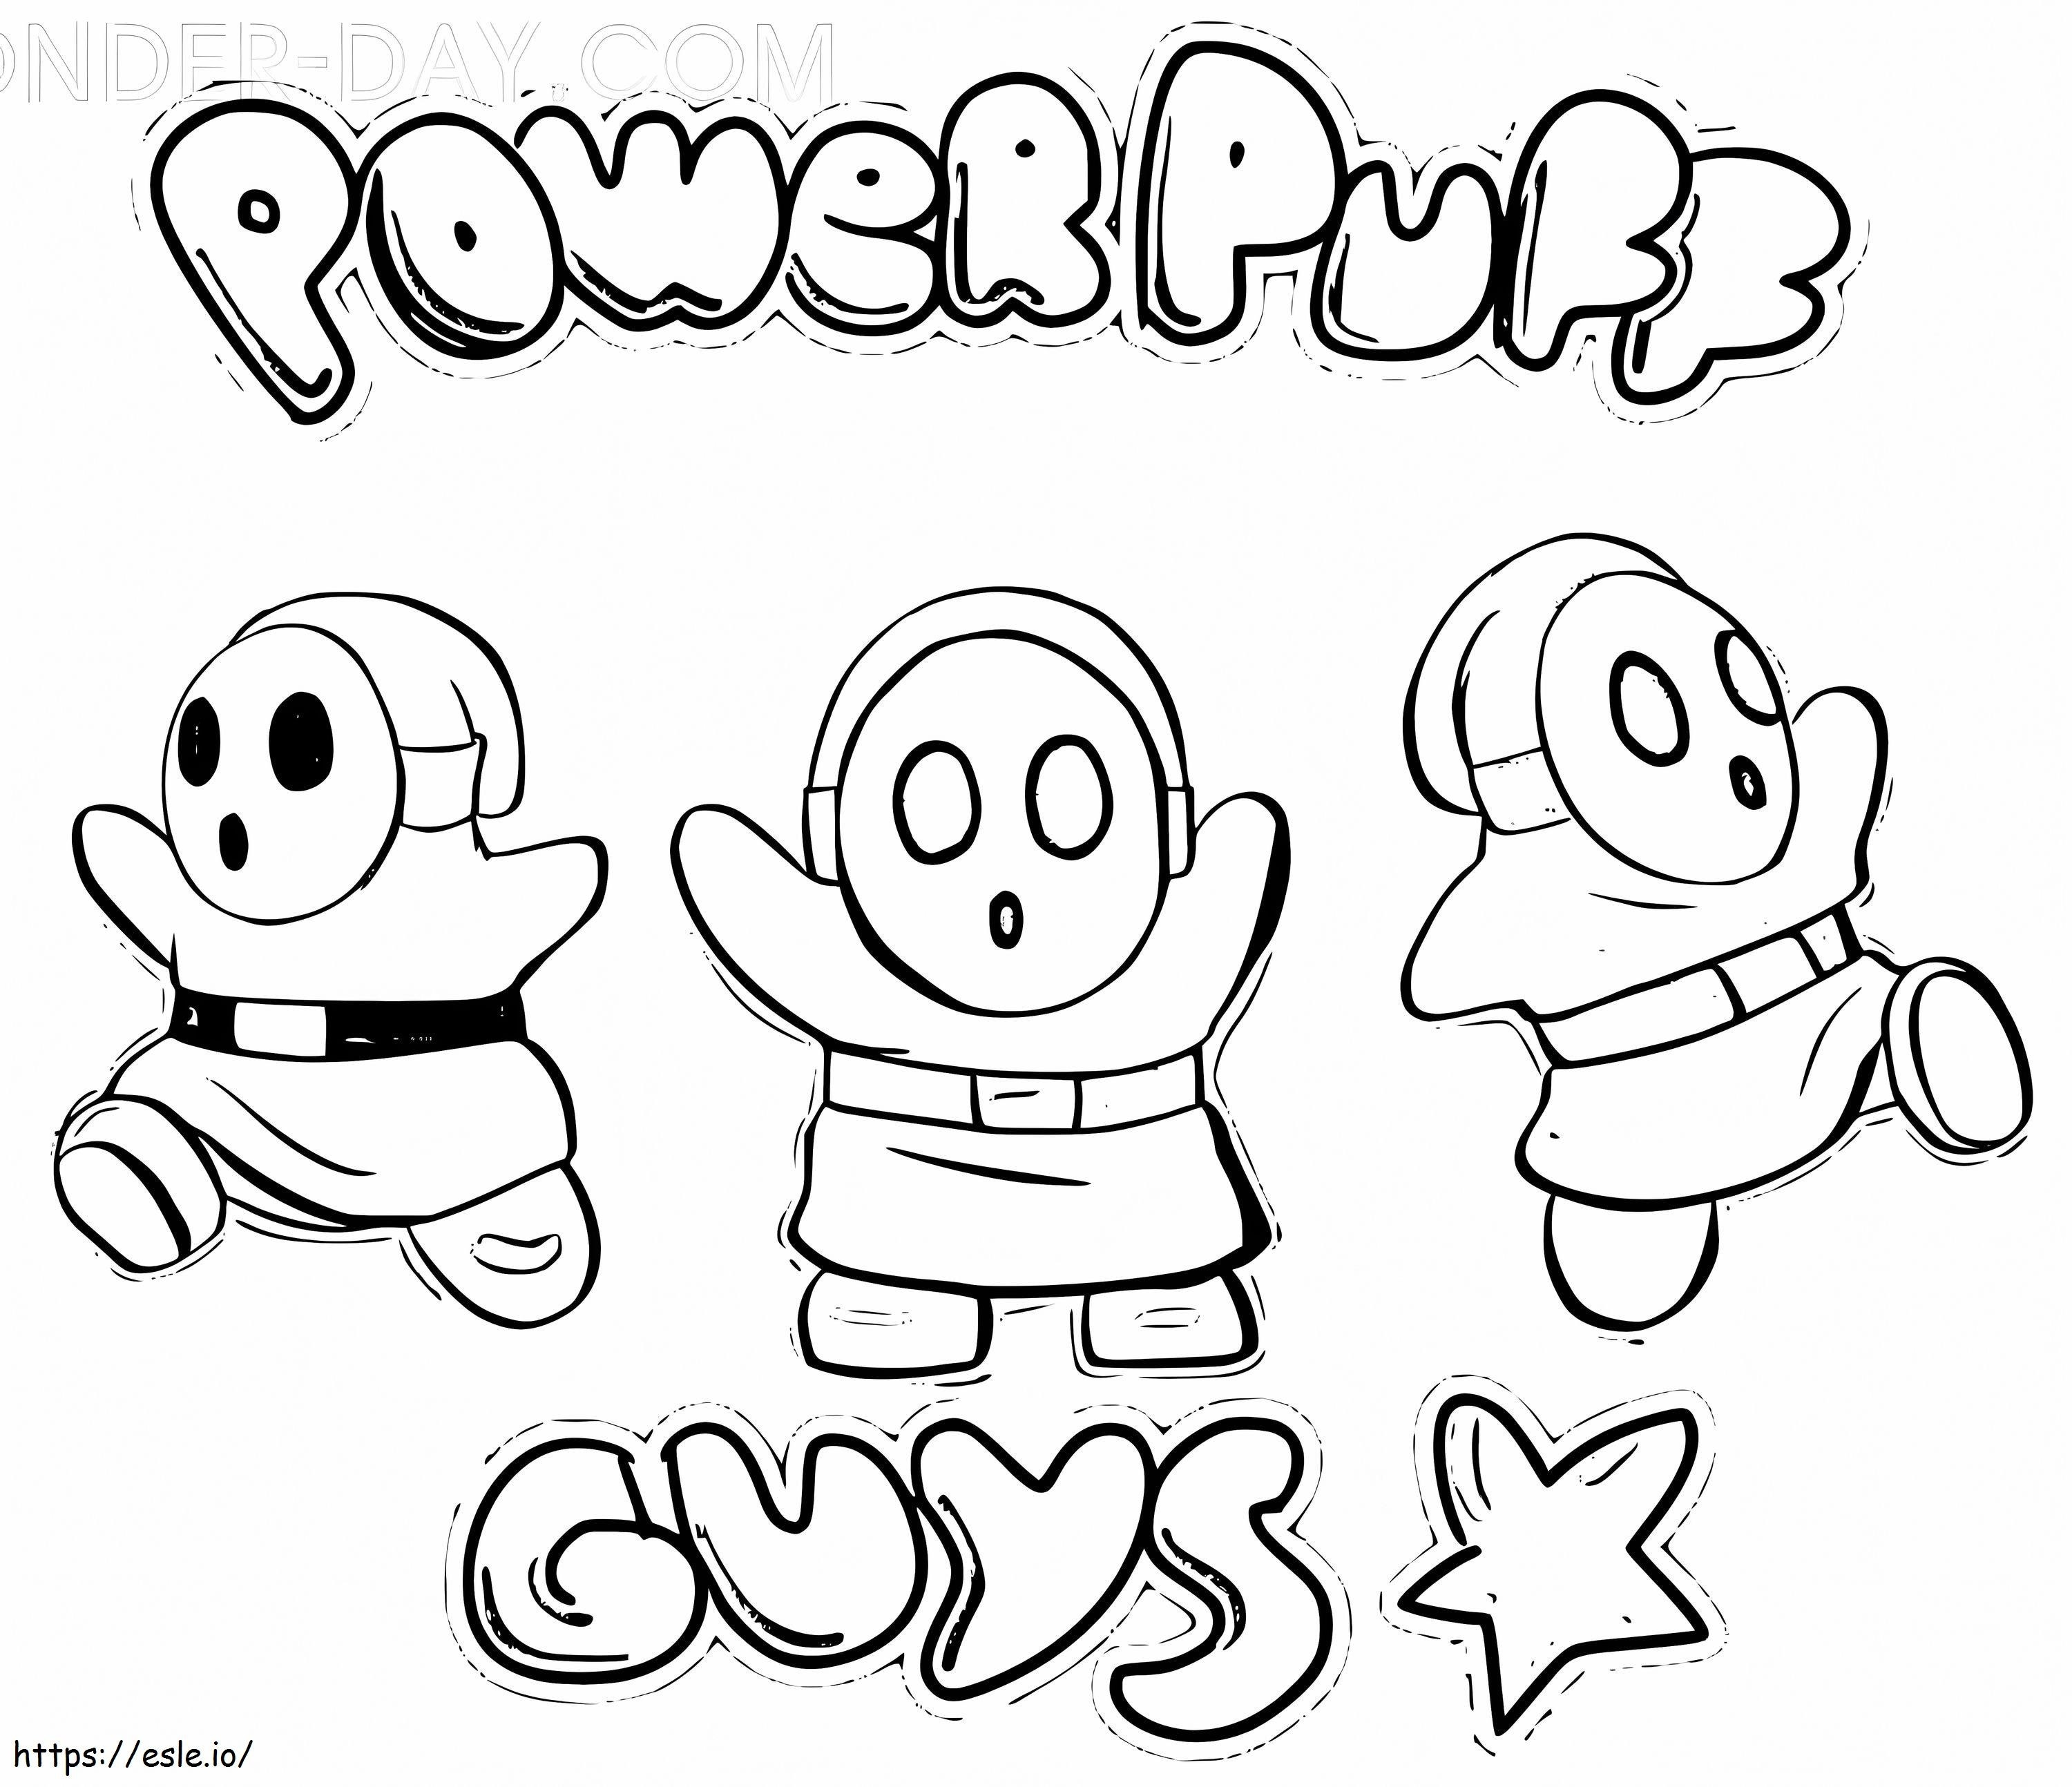 PowerPuff Tip timid Mario de colorat